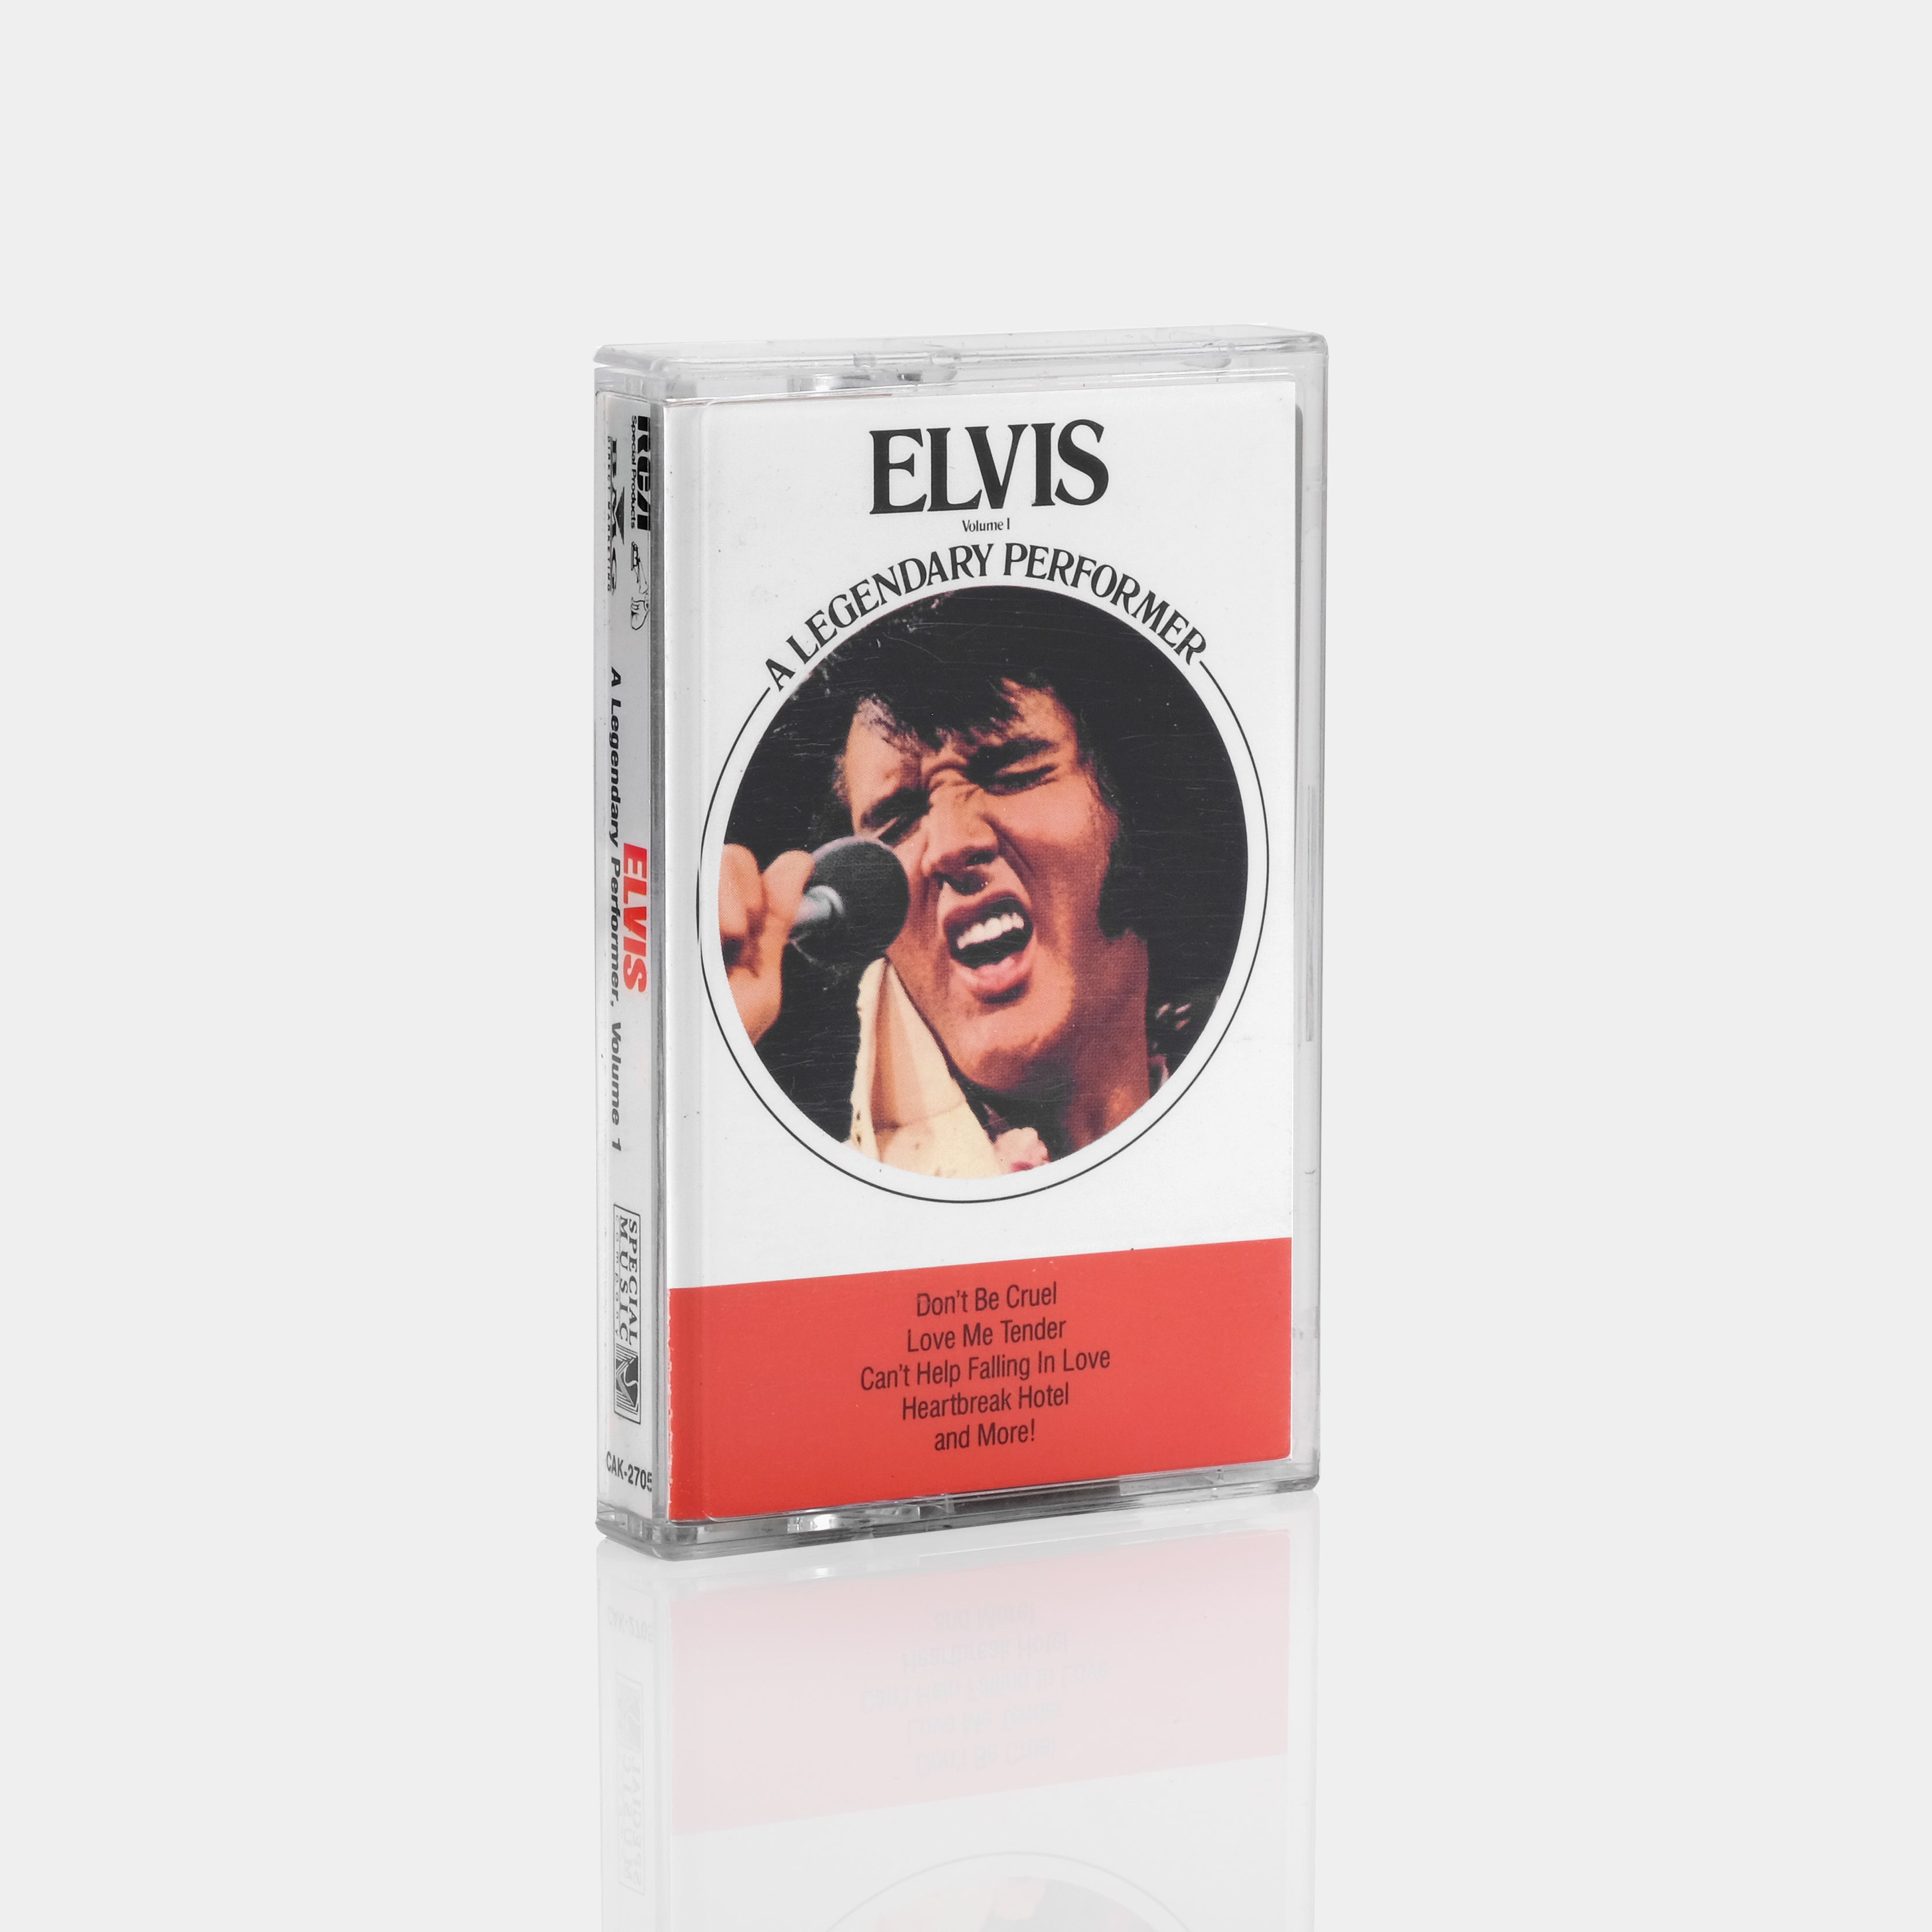 Elvis Presley - A Legendary Performer Volume 1 Cassette Tape